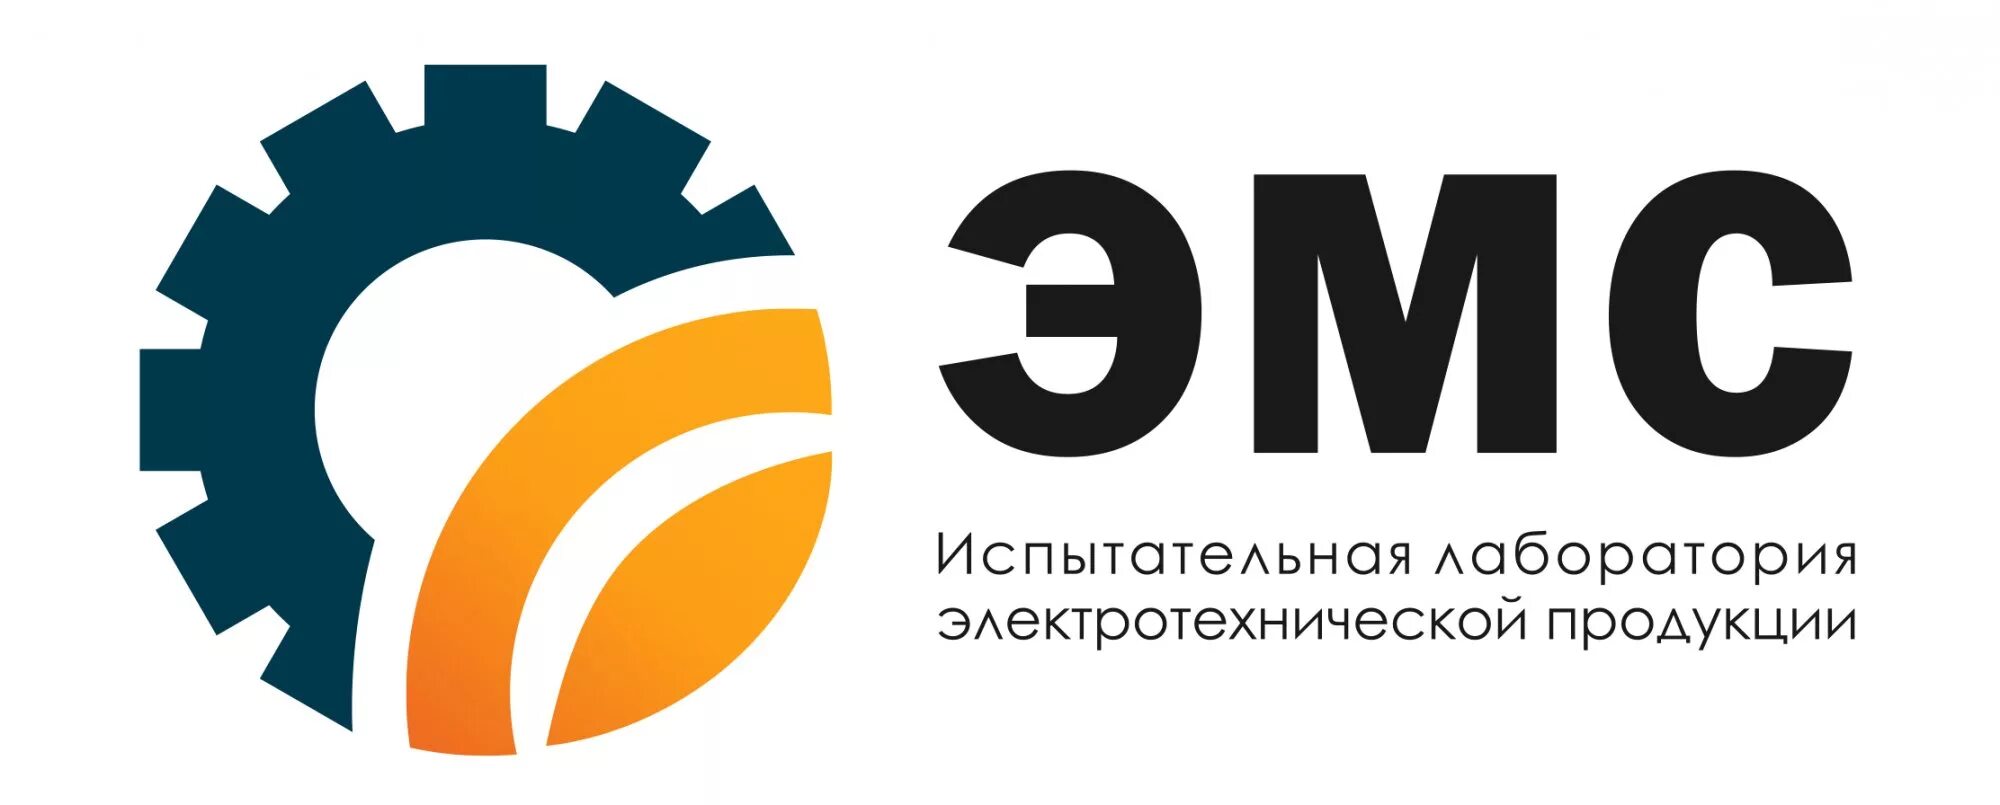 Центр сертификации Москва. Электротехническая лаборатория логотип. Логотип компании сертификации. Центр сертификации лого. Центры сертификации сайтов